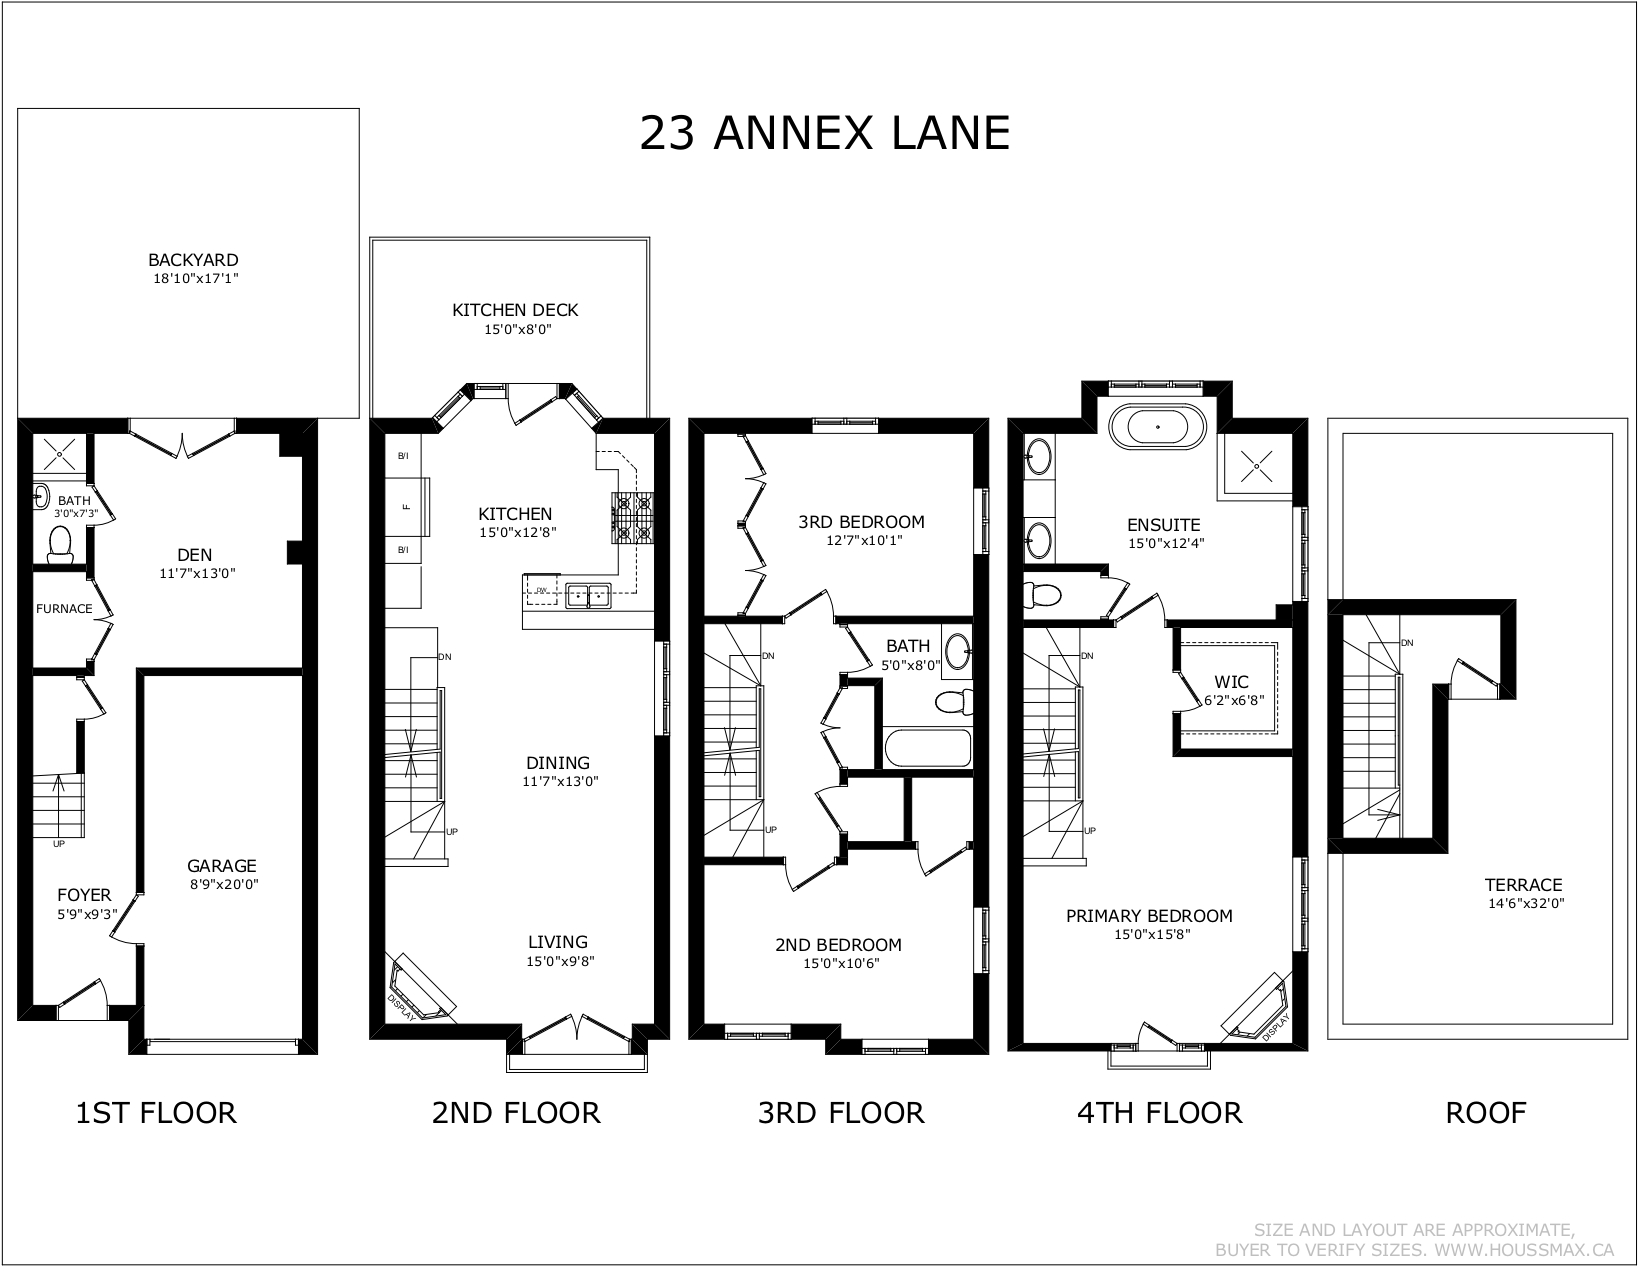 Floor plans for 23 Annex Lane.